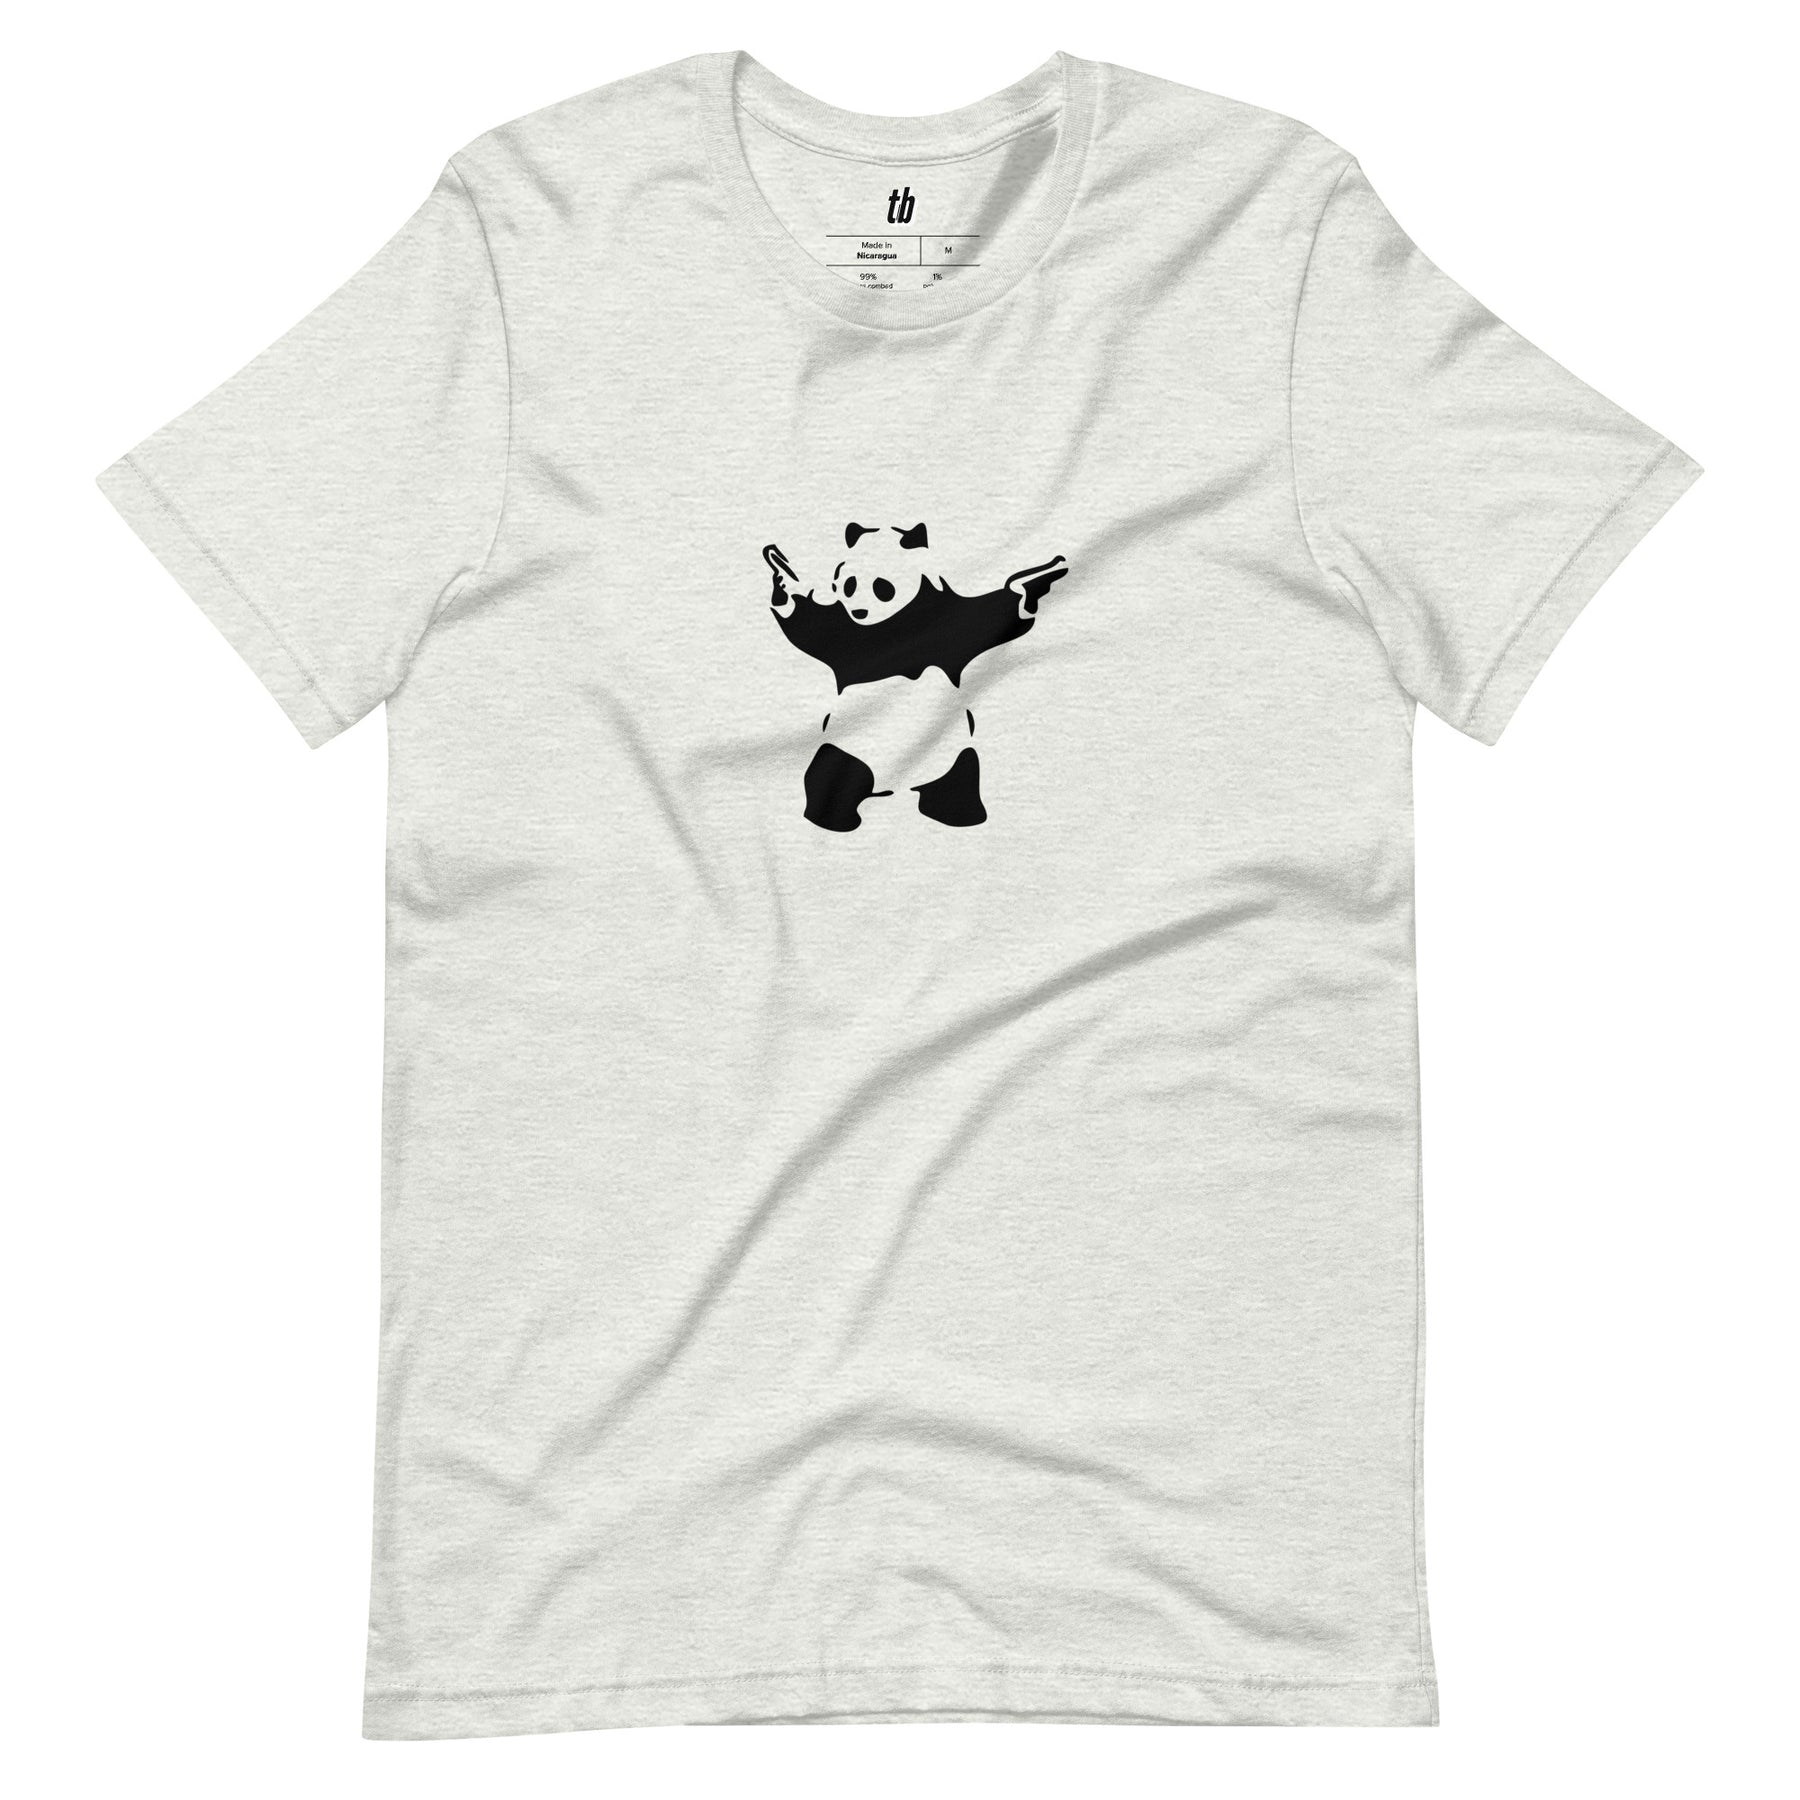 Banksy Panda T-Shirt - Teebop